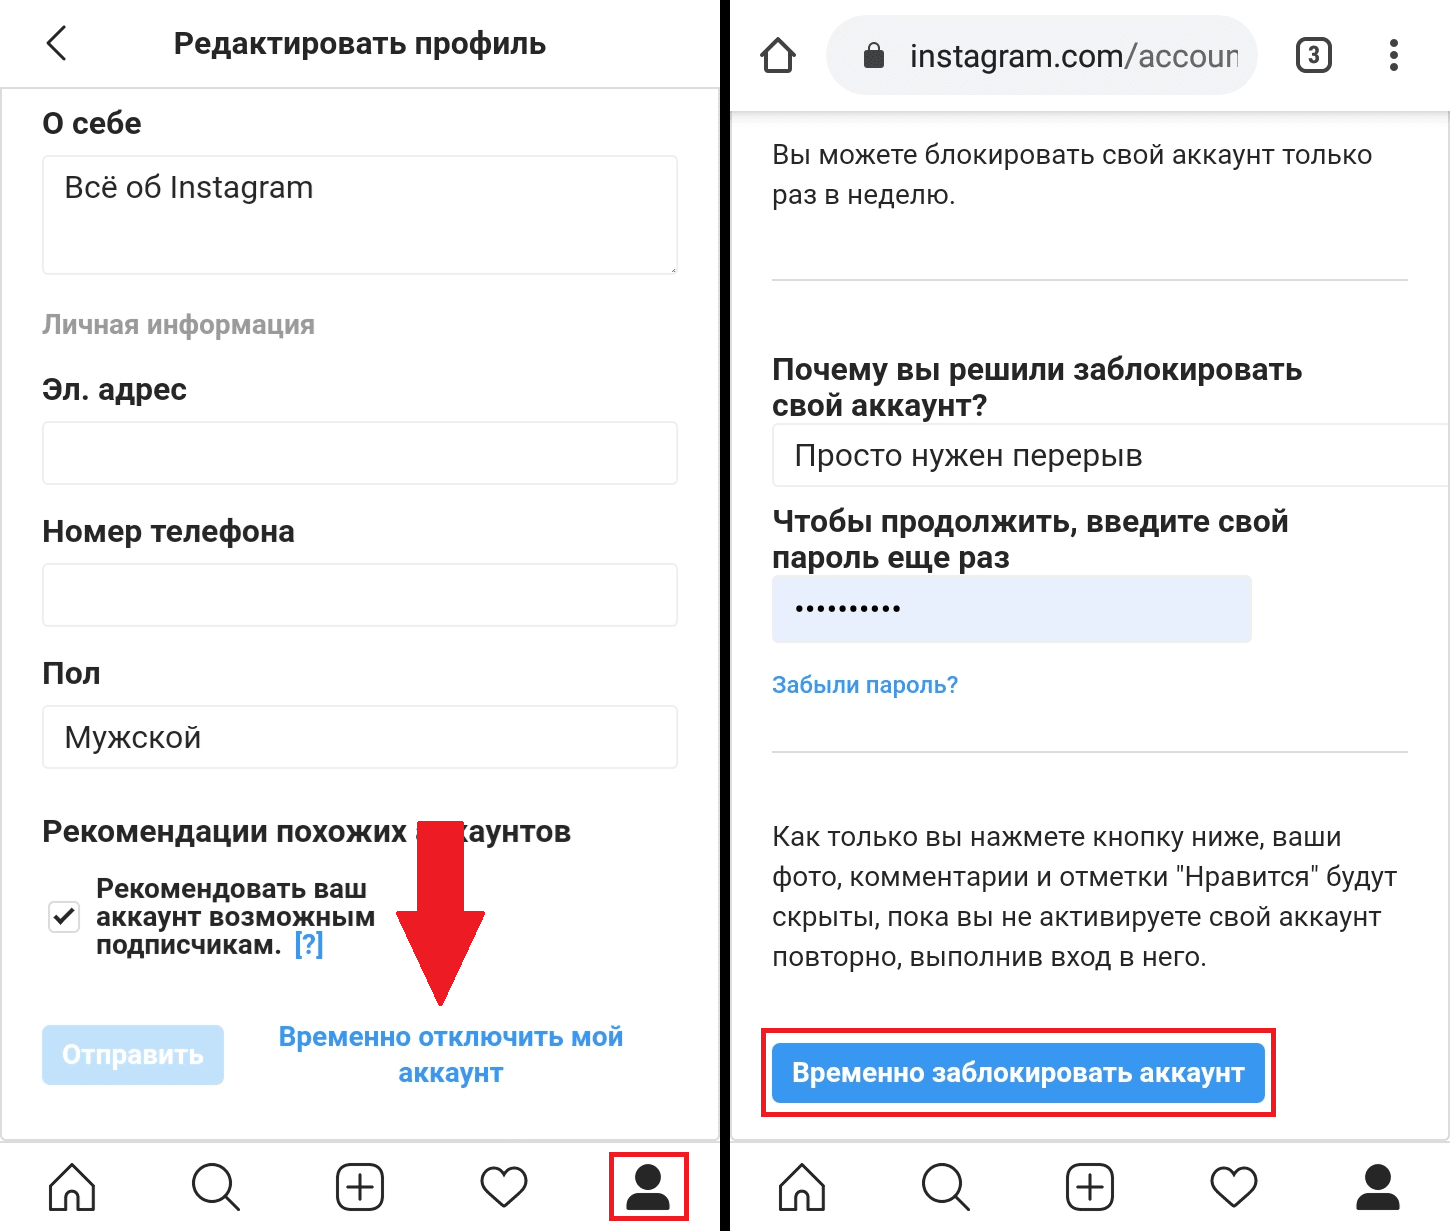 временно заблокировать профиль в Instagram